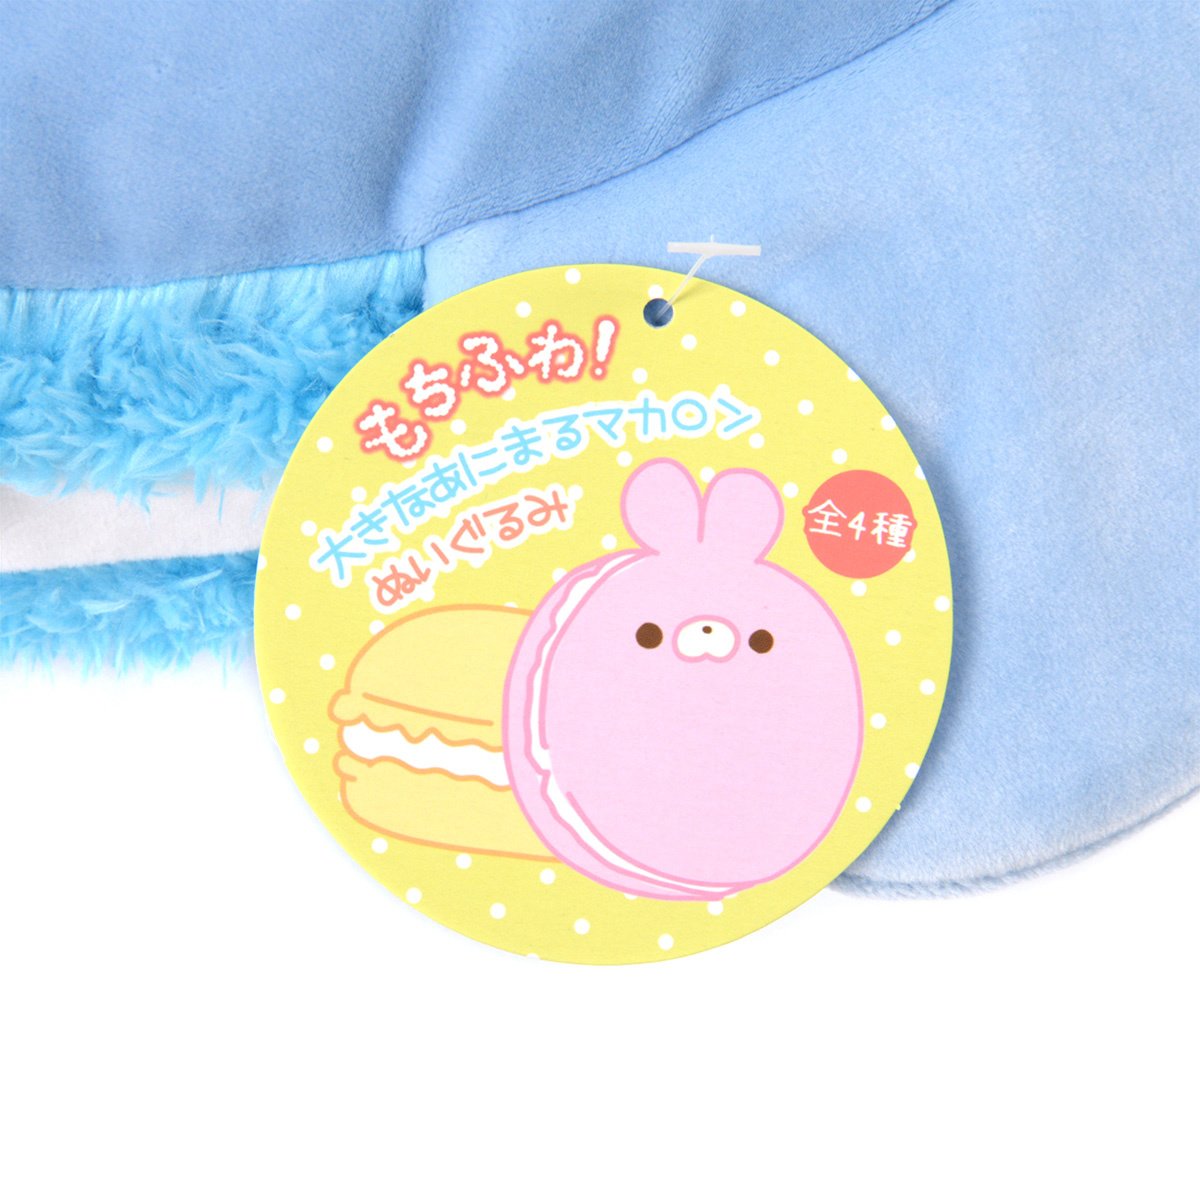 Mochi Fuwa! Big Macaron Plush Collection - Tokyo Otaku Mode (TOM)